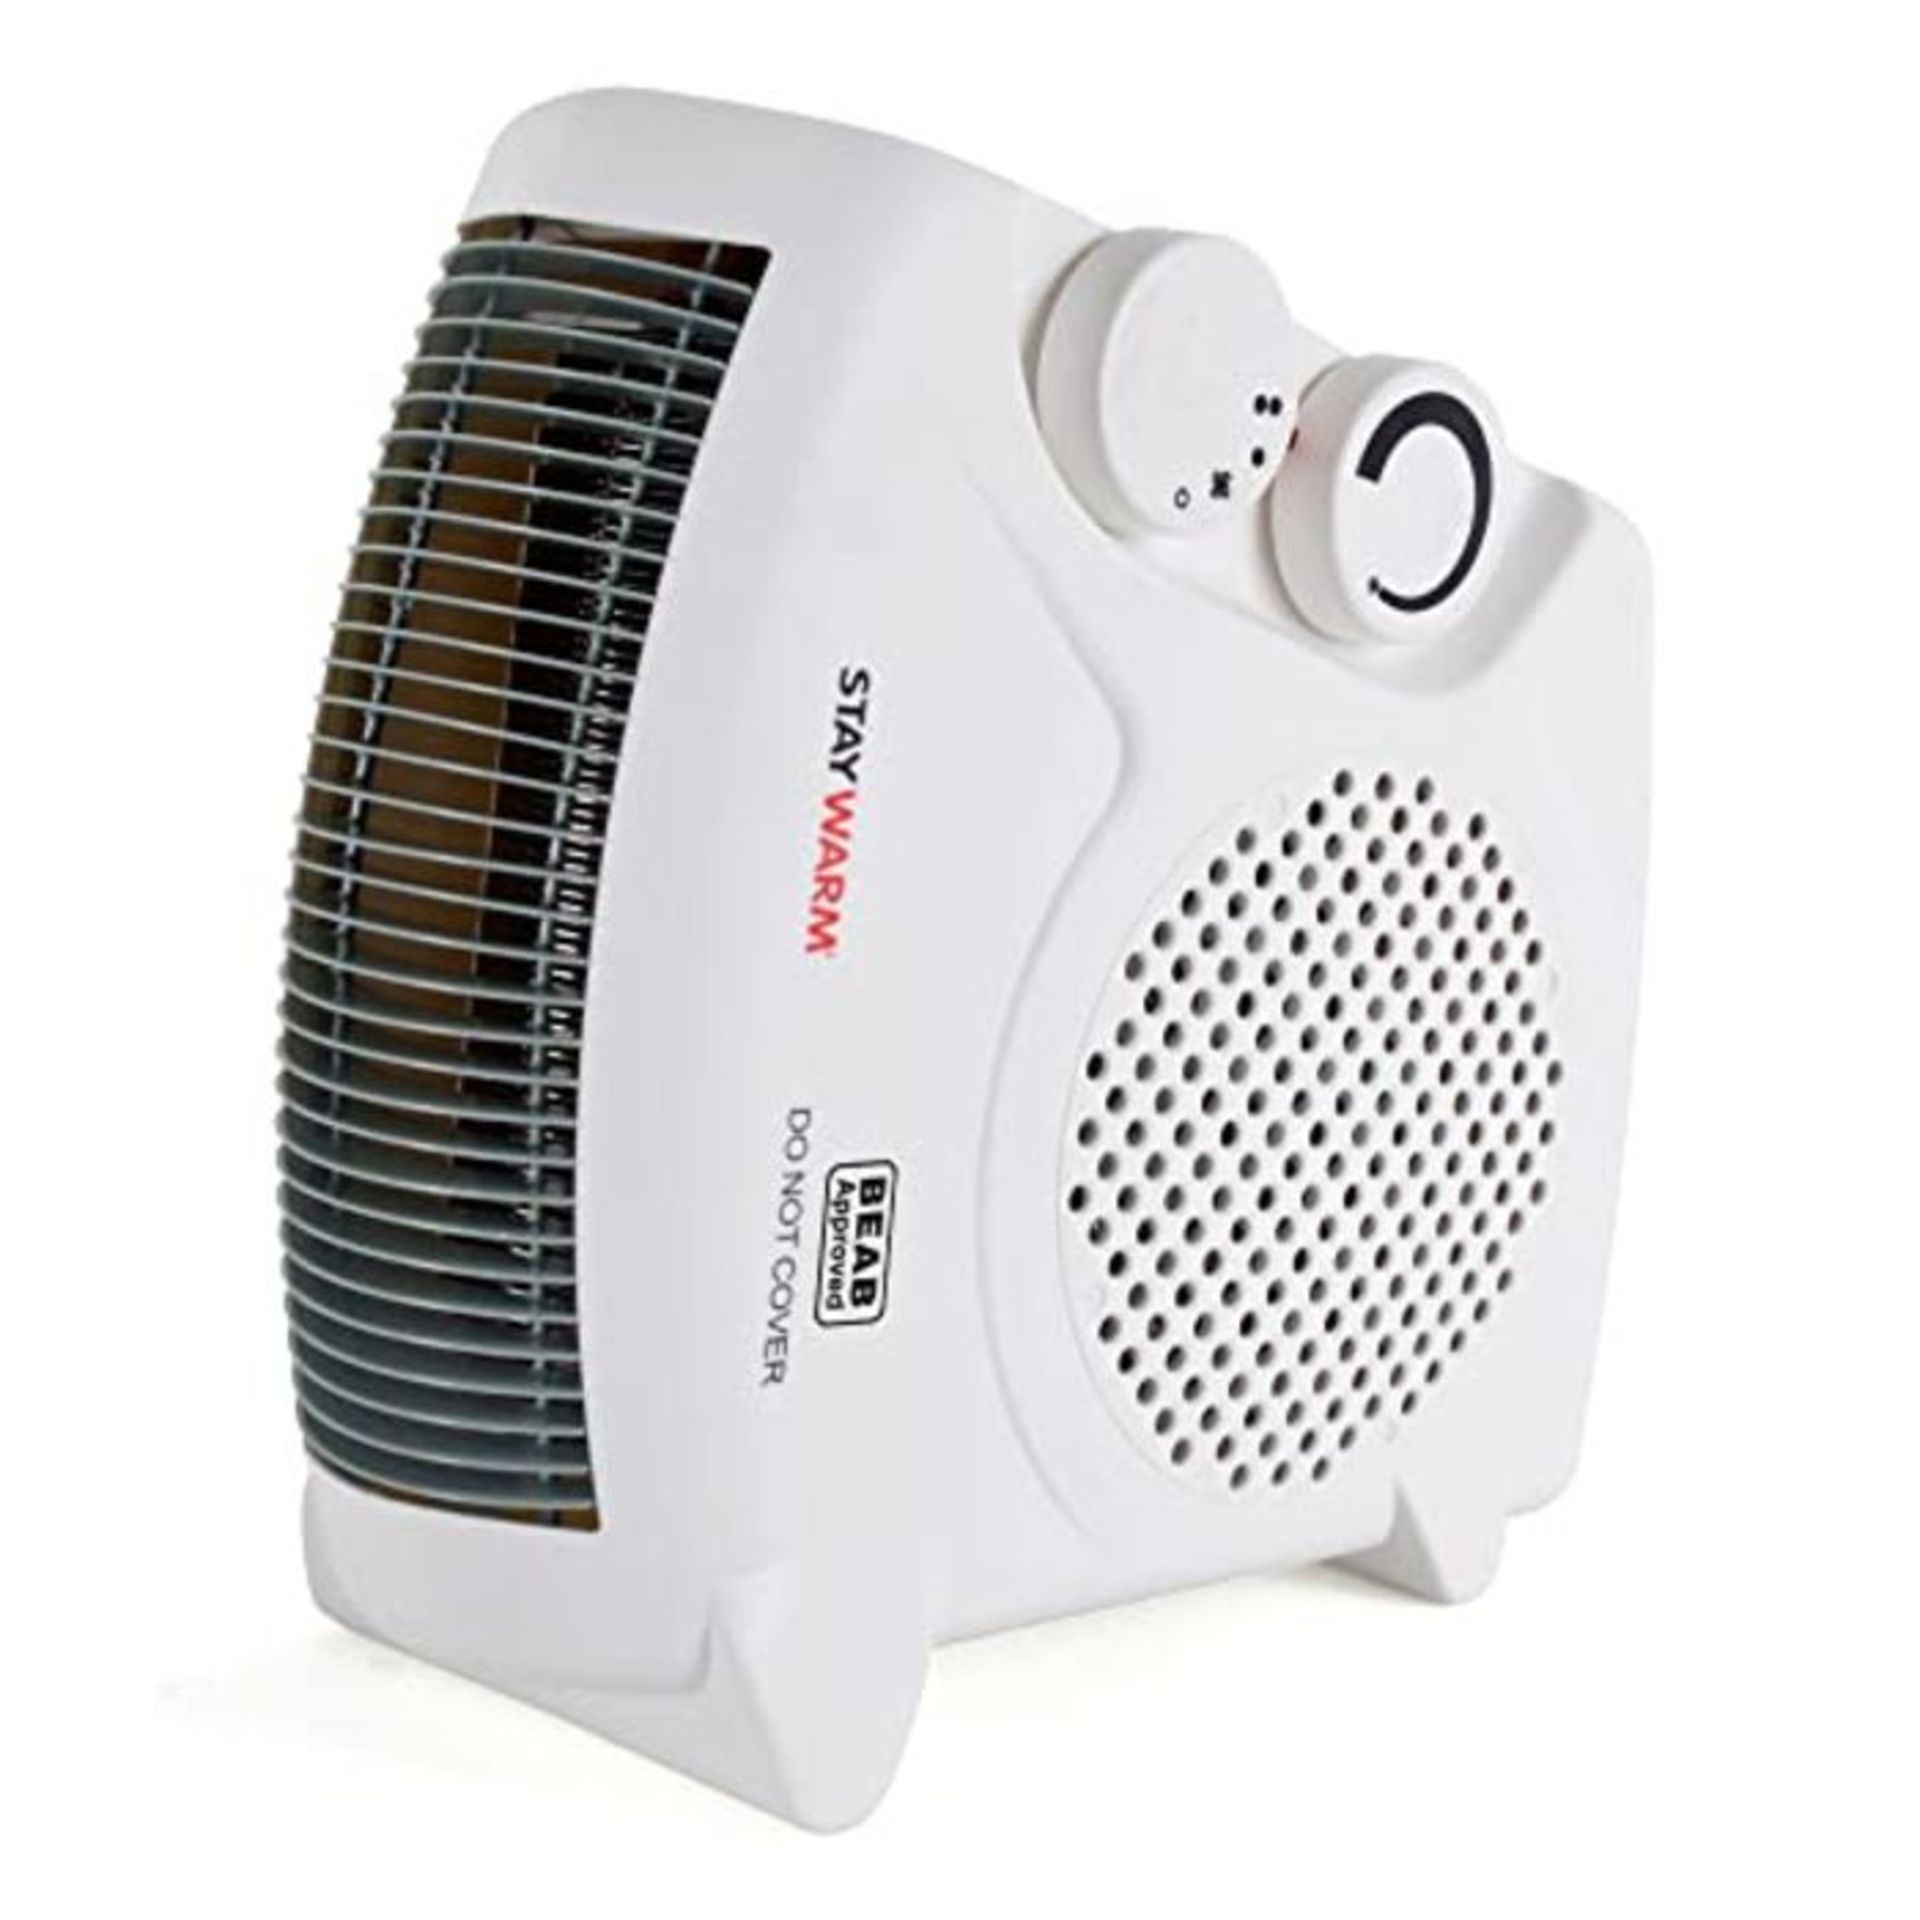 STAYWARM?2000w Upright and Flatbed Fan Heater with 2 Heat Settings / Cool Blow Fan /